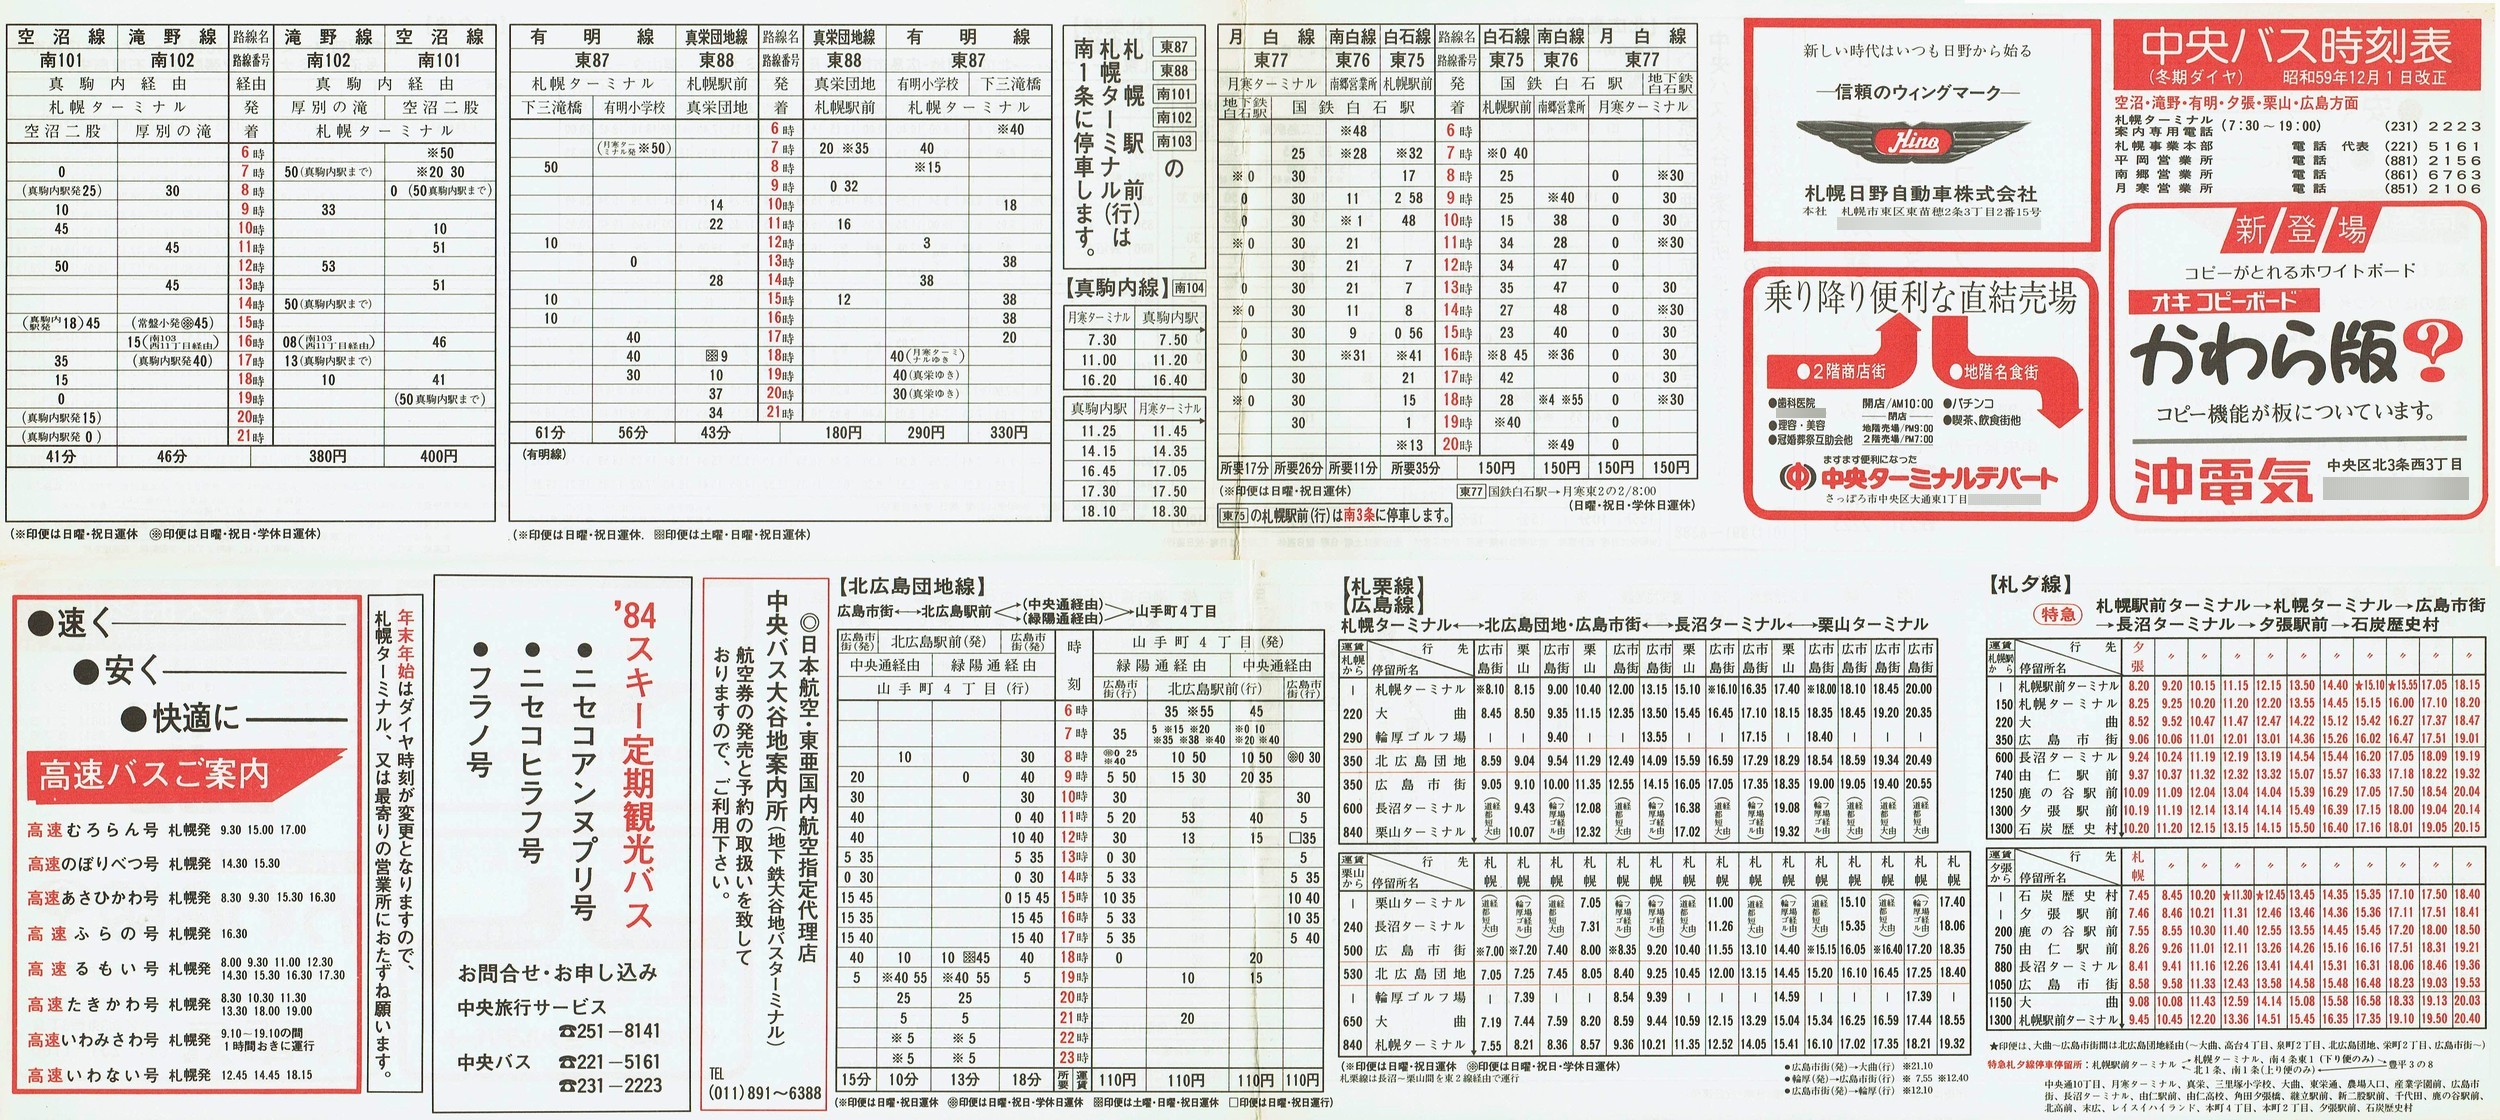 1984-12-01改正_北海道中央バス(札幌)_空沼・滝野・有明・夕張・栗山・広島方面時刻表